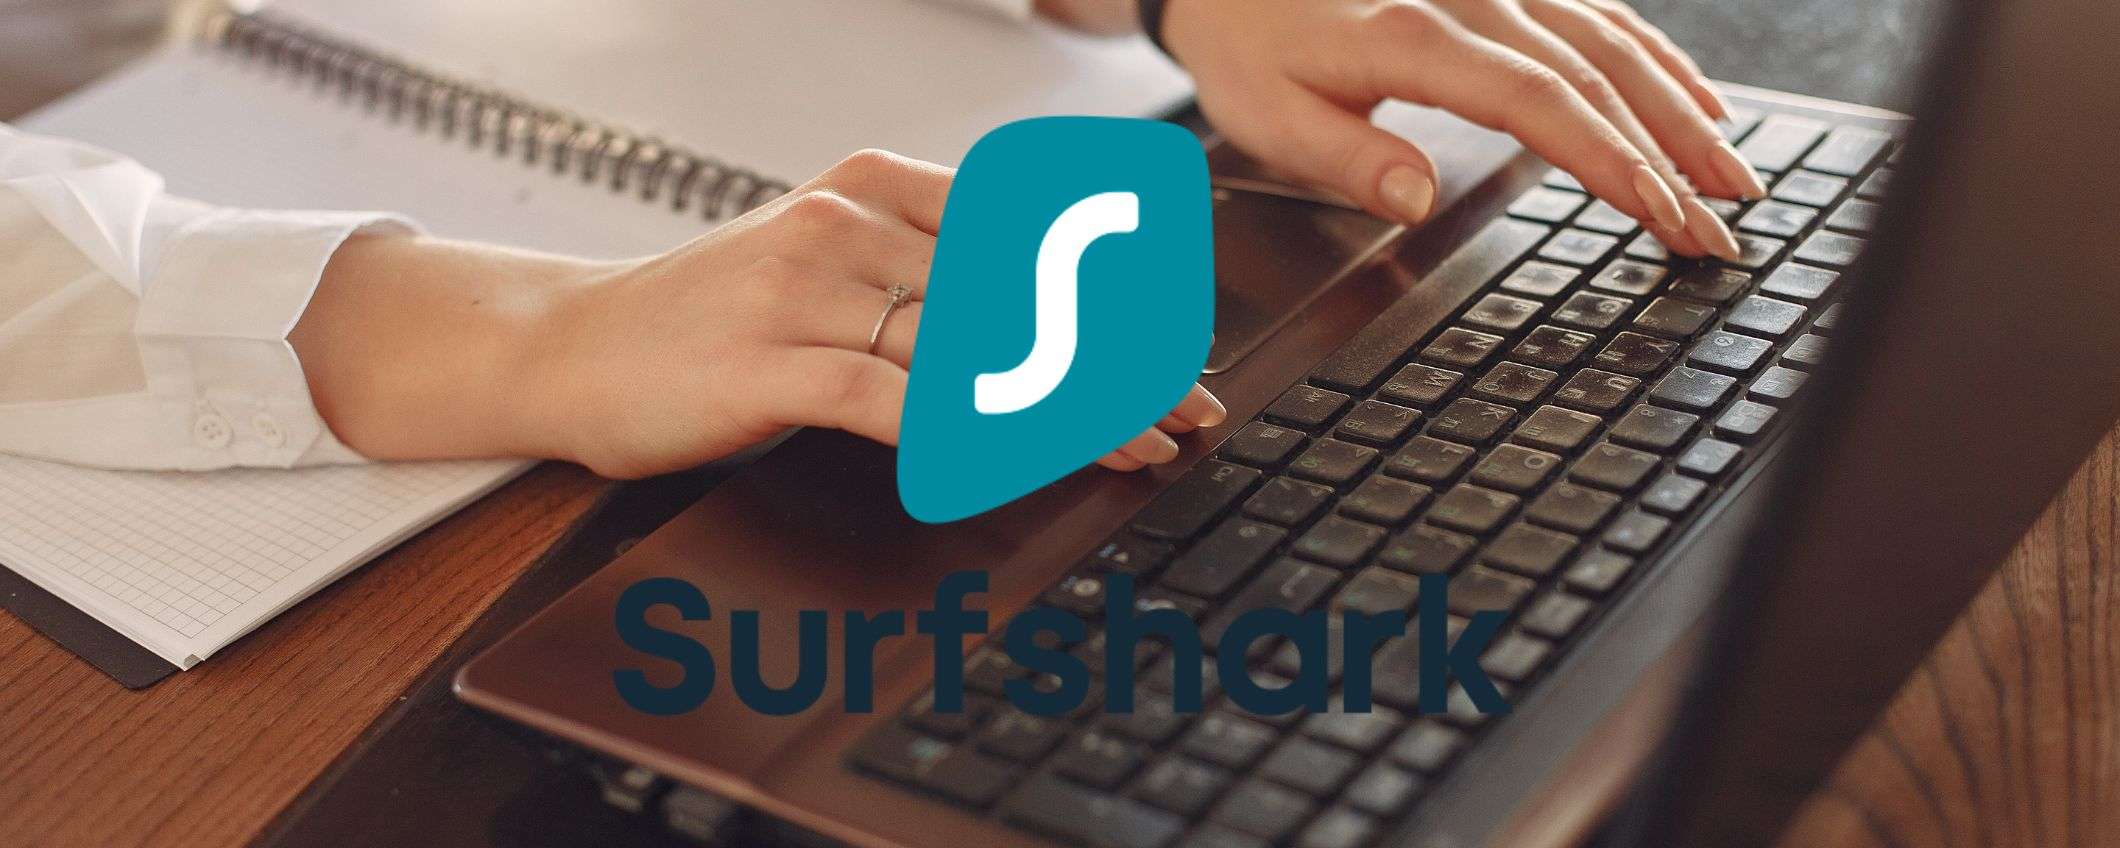 Surfshark VPN in sconto: per te -82% e 4 mesi extra gratis